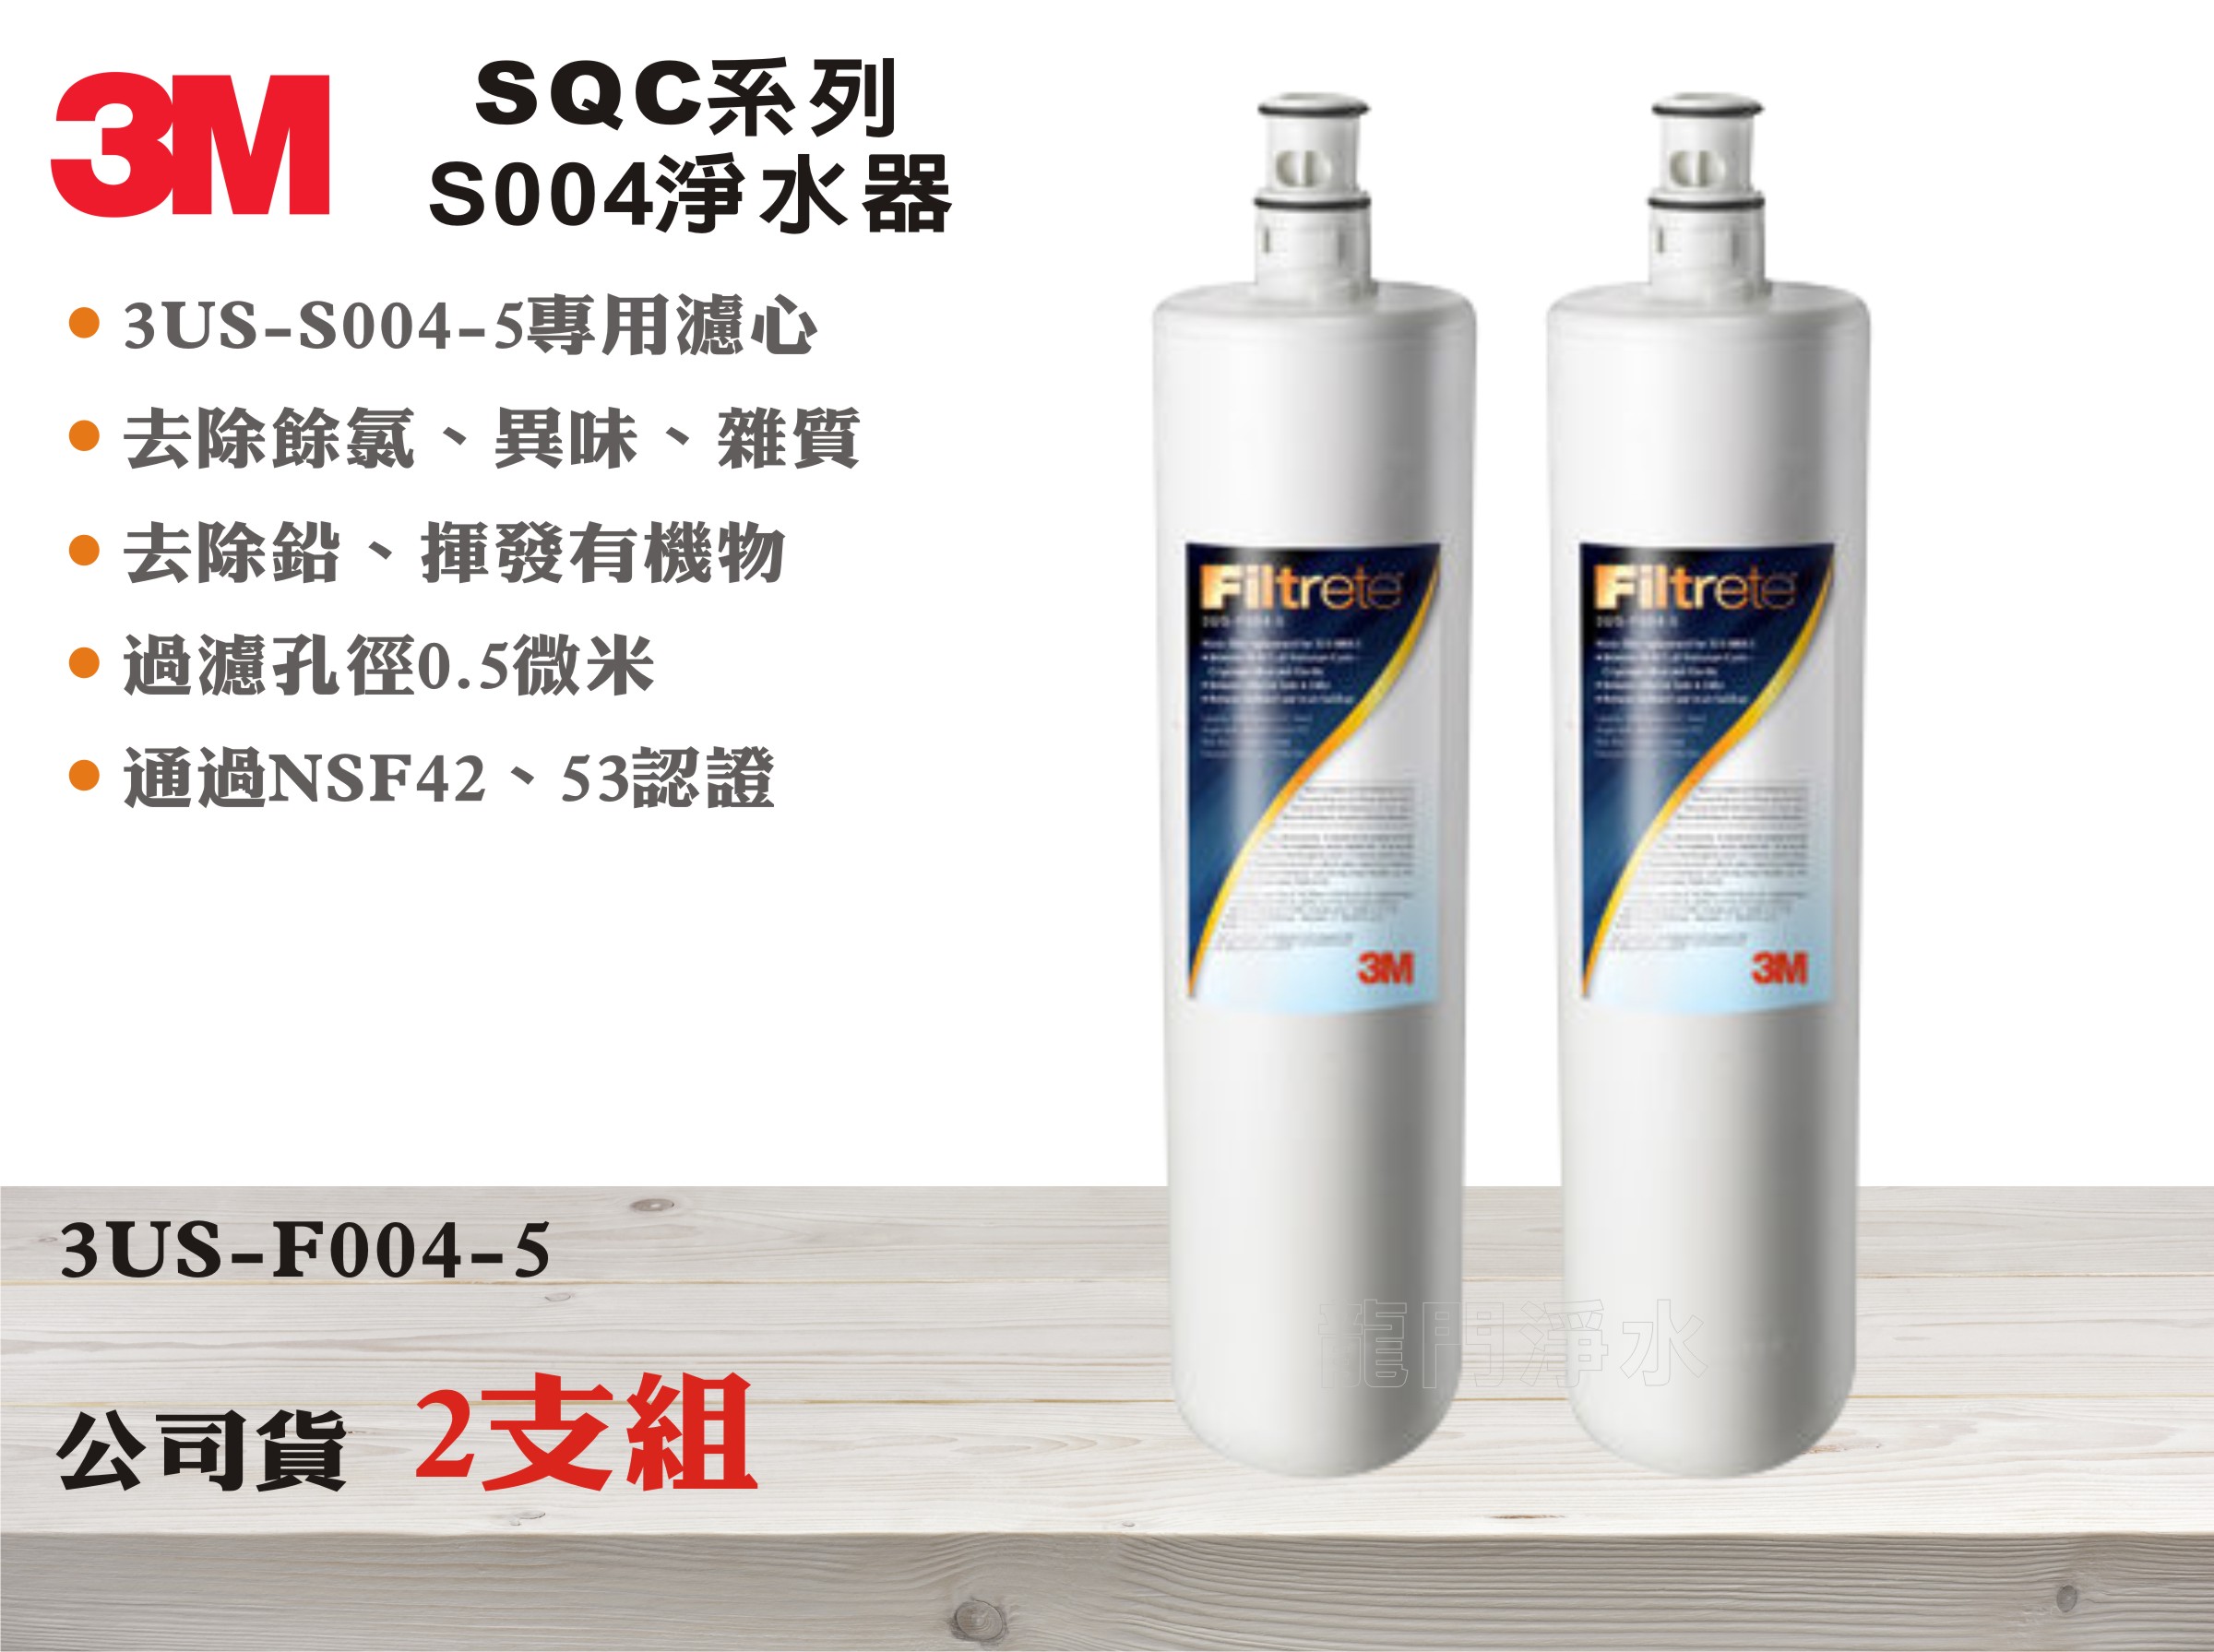 【龍門淨水】3M SQC系列S004淨水器 多效能活性碳濾心 除氯異味除鉛 公司貨型號3US-F004-5(MT346)